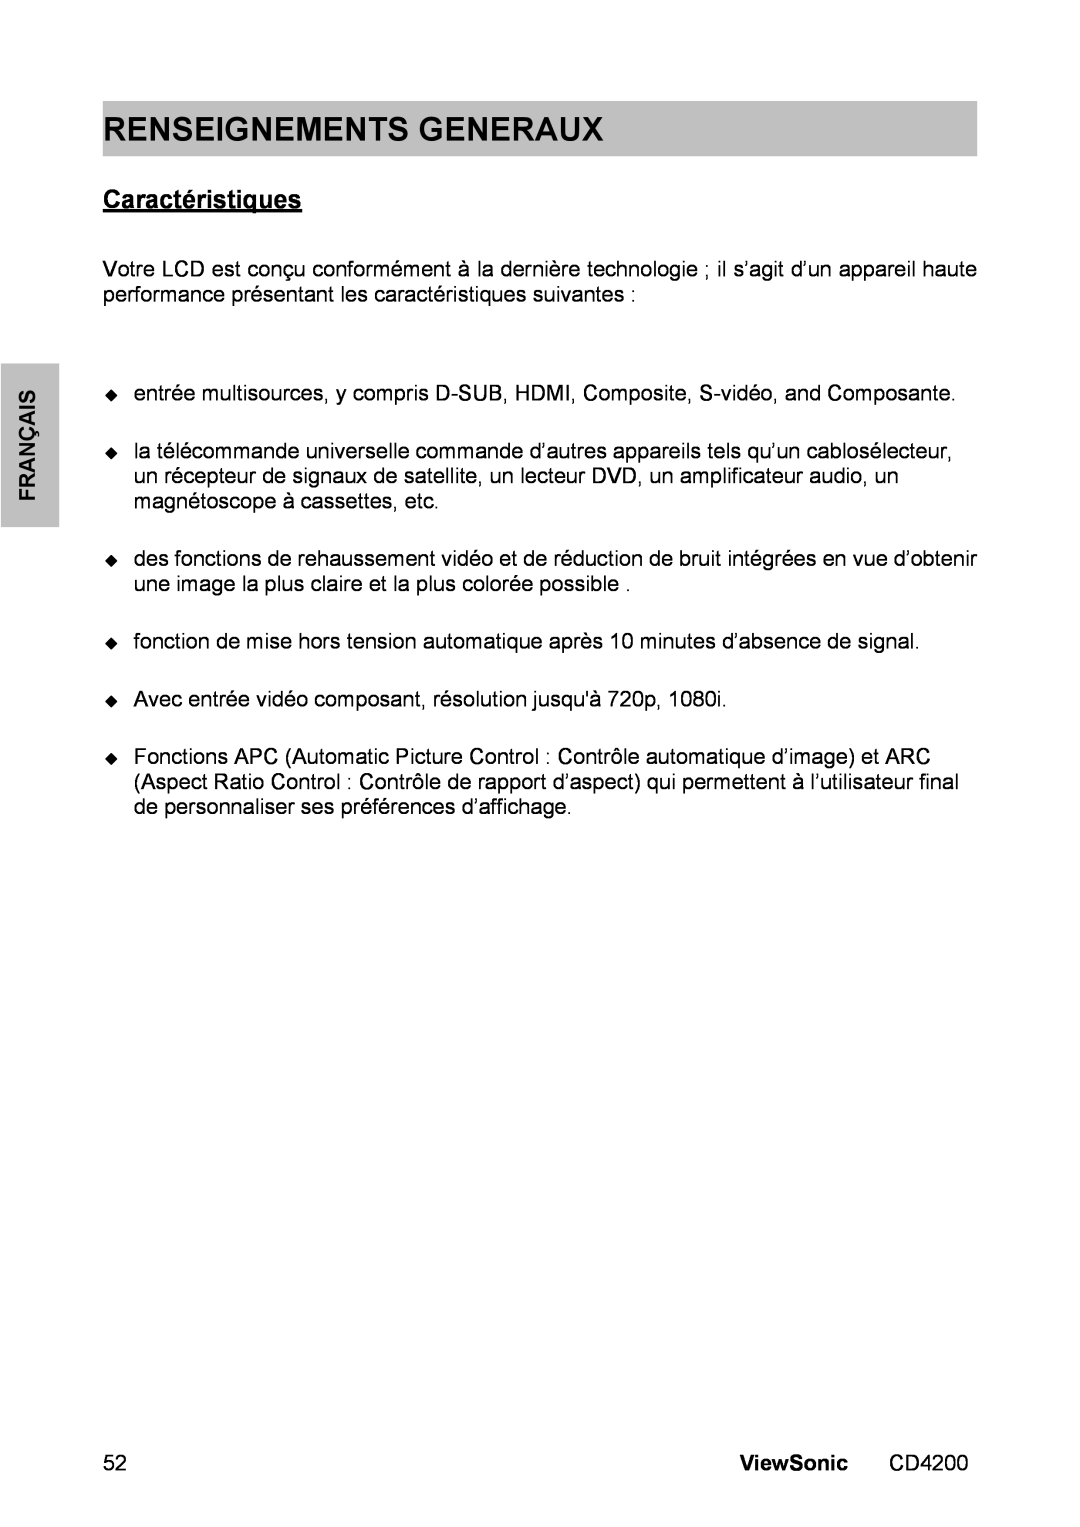 ViewSonic CD4200 manual Renseignements Generaux, Caractéristiques, Français, ViewSonic 